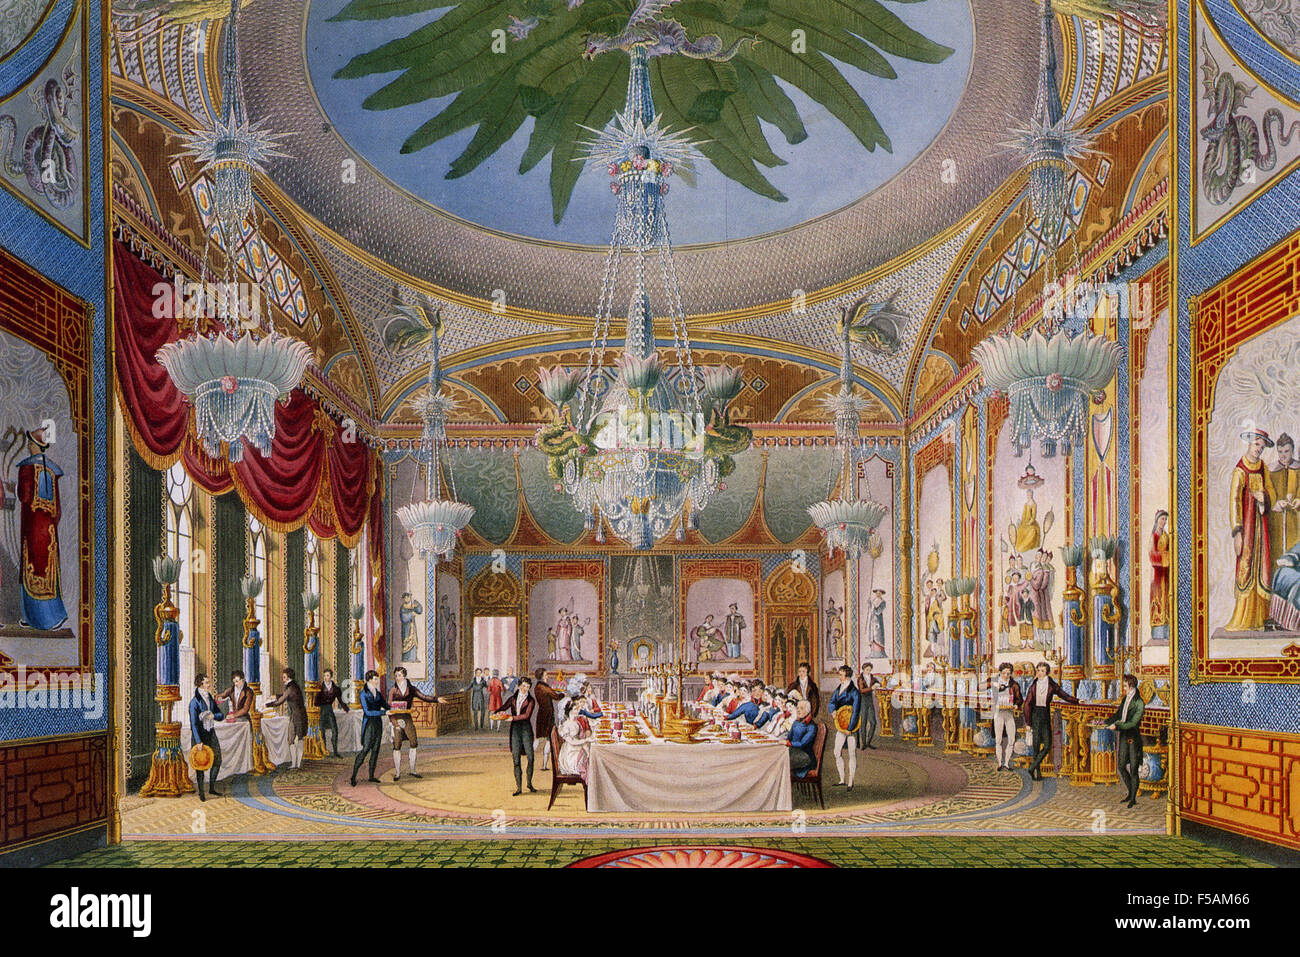 BRIGHTON Pavilion - la sala de banquetes del "Royal Pavilion en Brighton" publicado por el arquitecto John Nash en 1827 Foto de stock